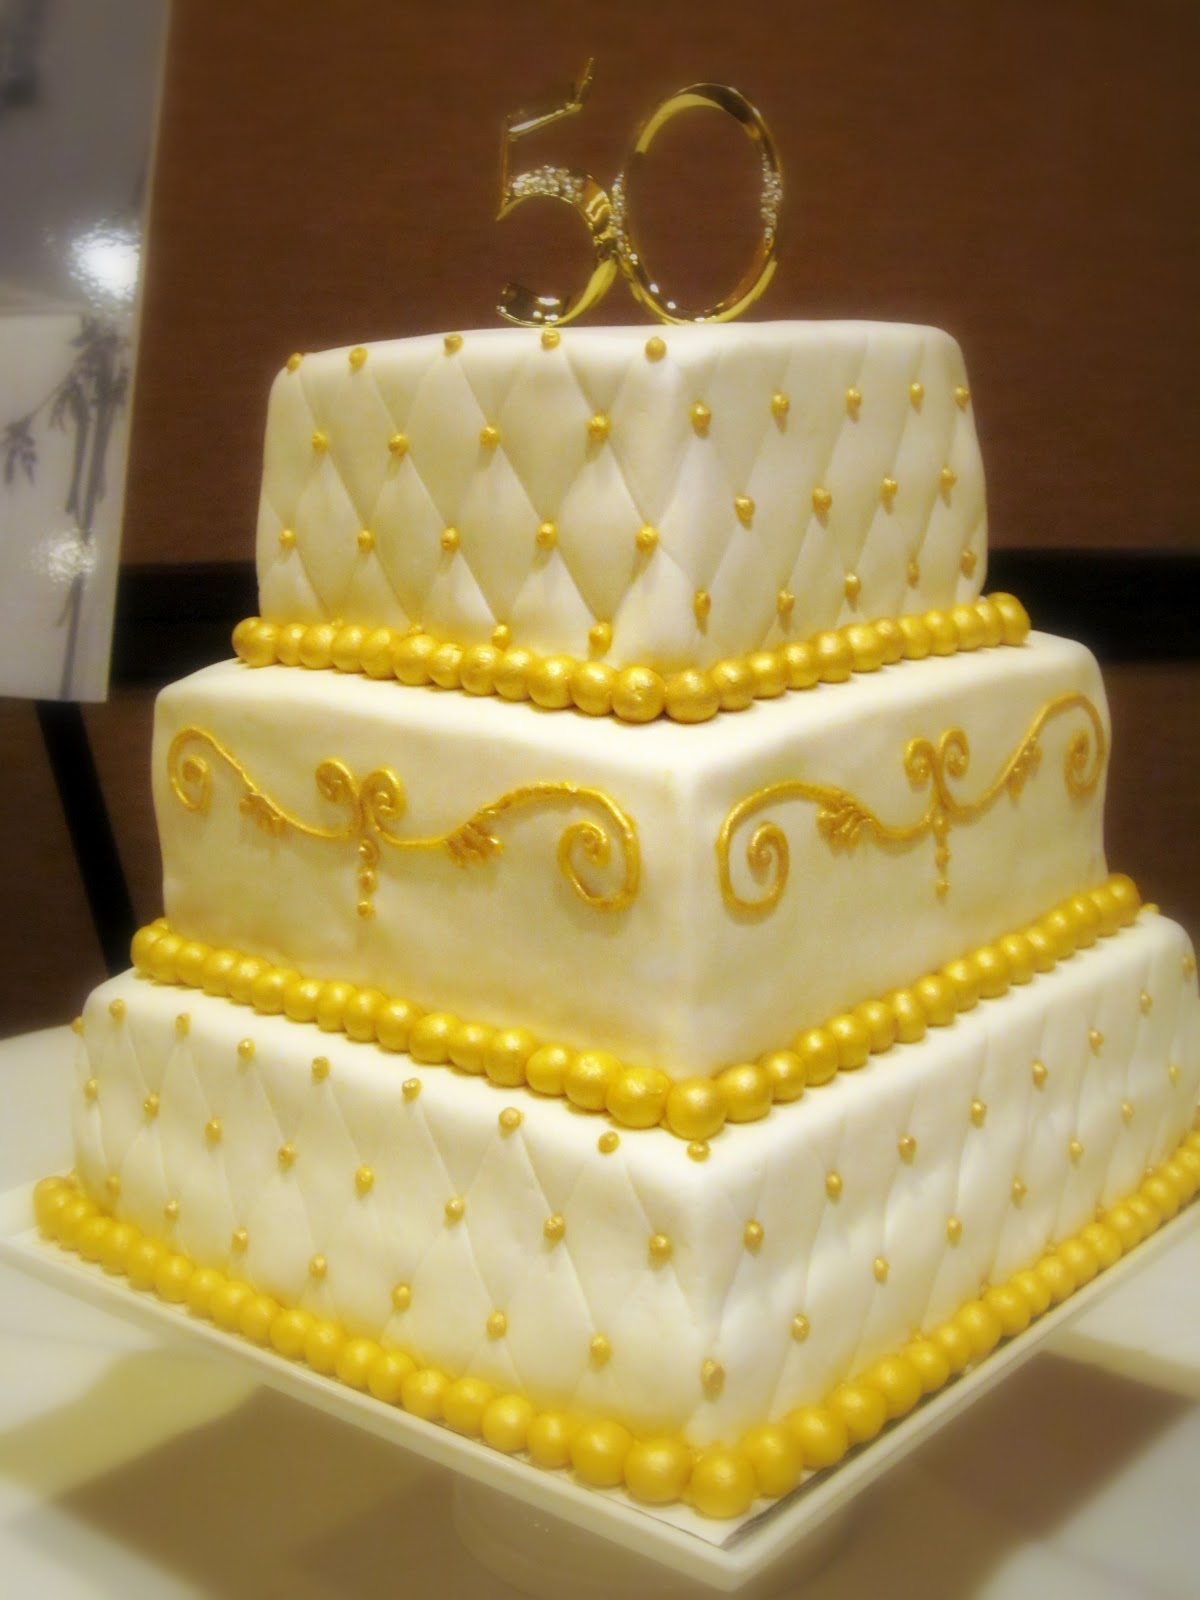 Darlin' Designs: 50th Anniversary Cake